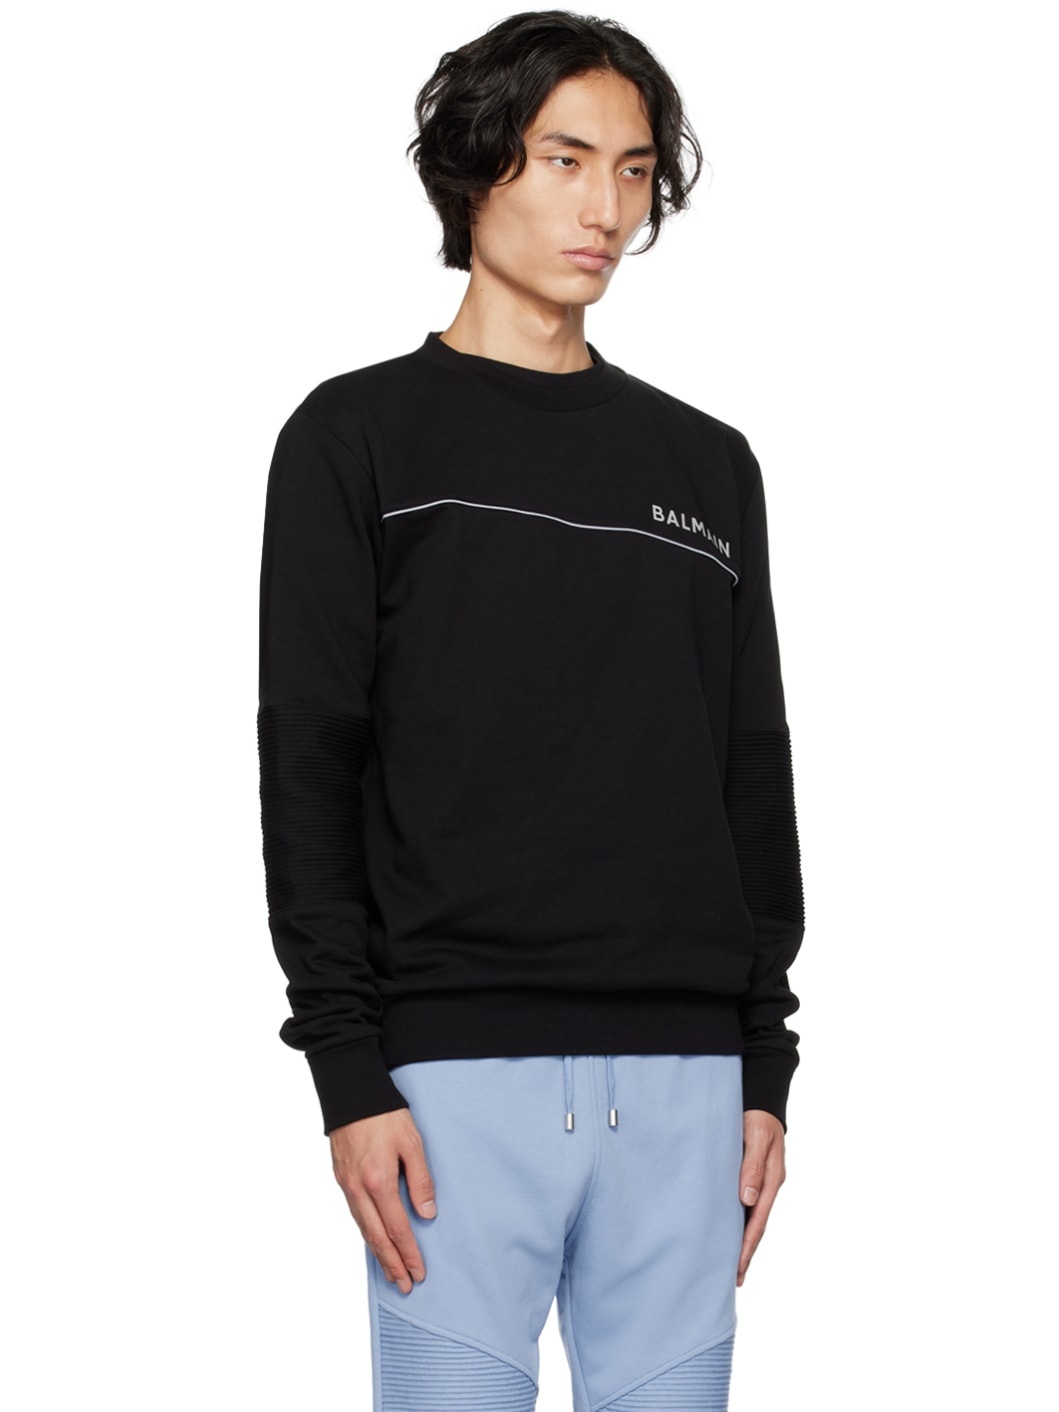 Black Reflective Sweatshirt - 2